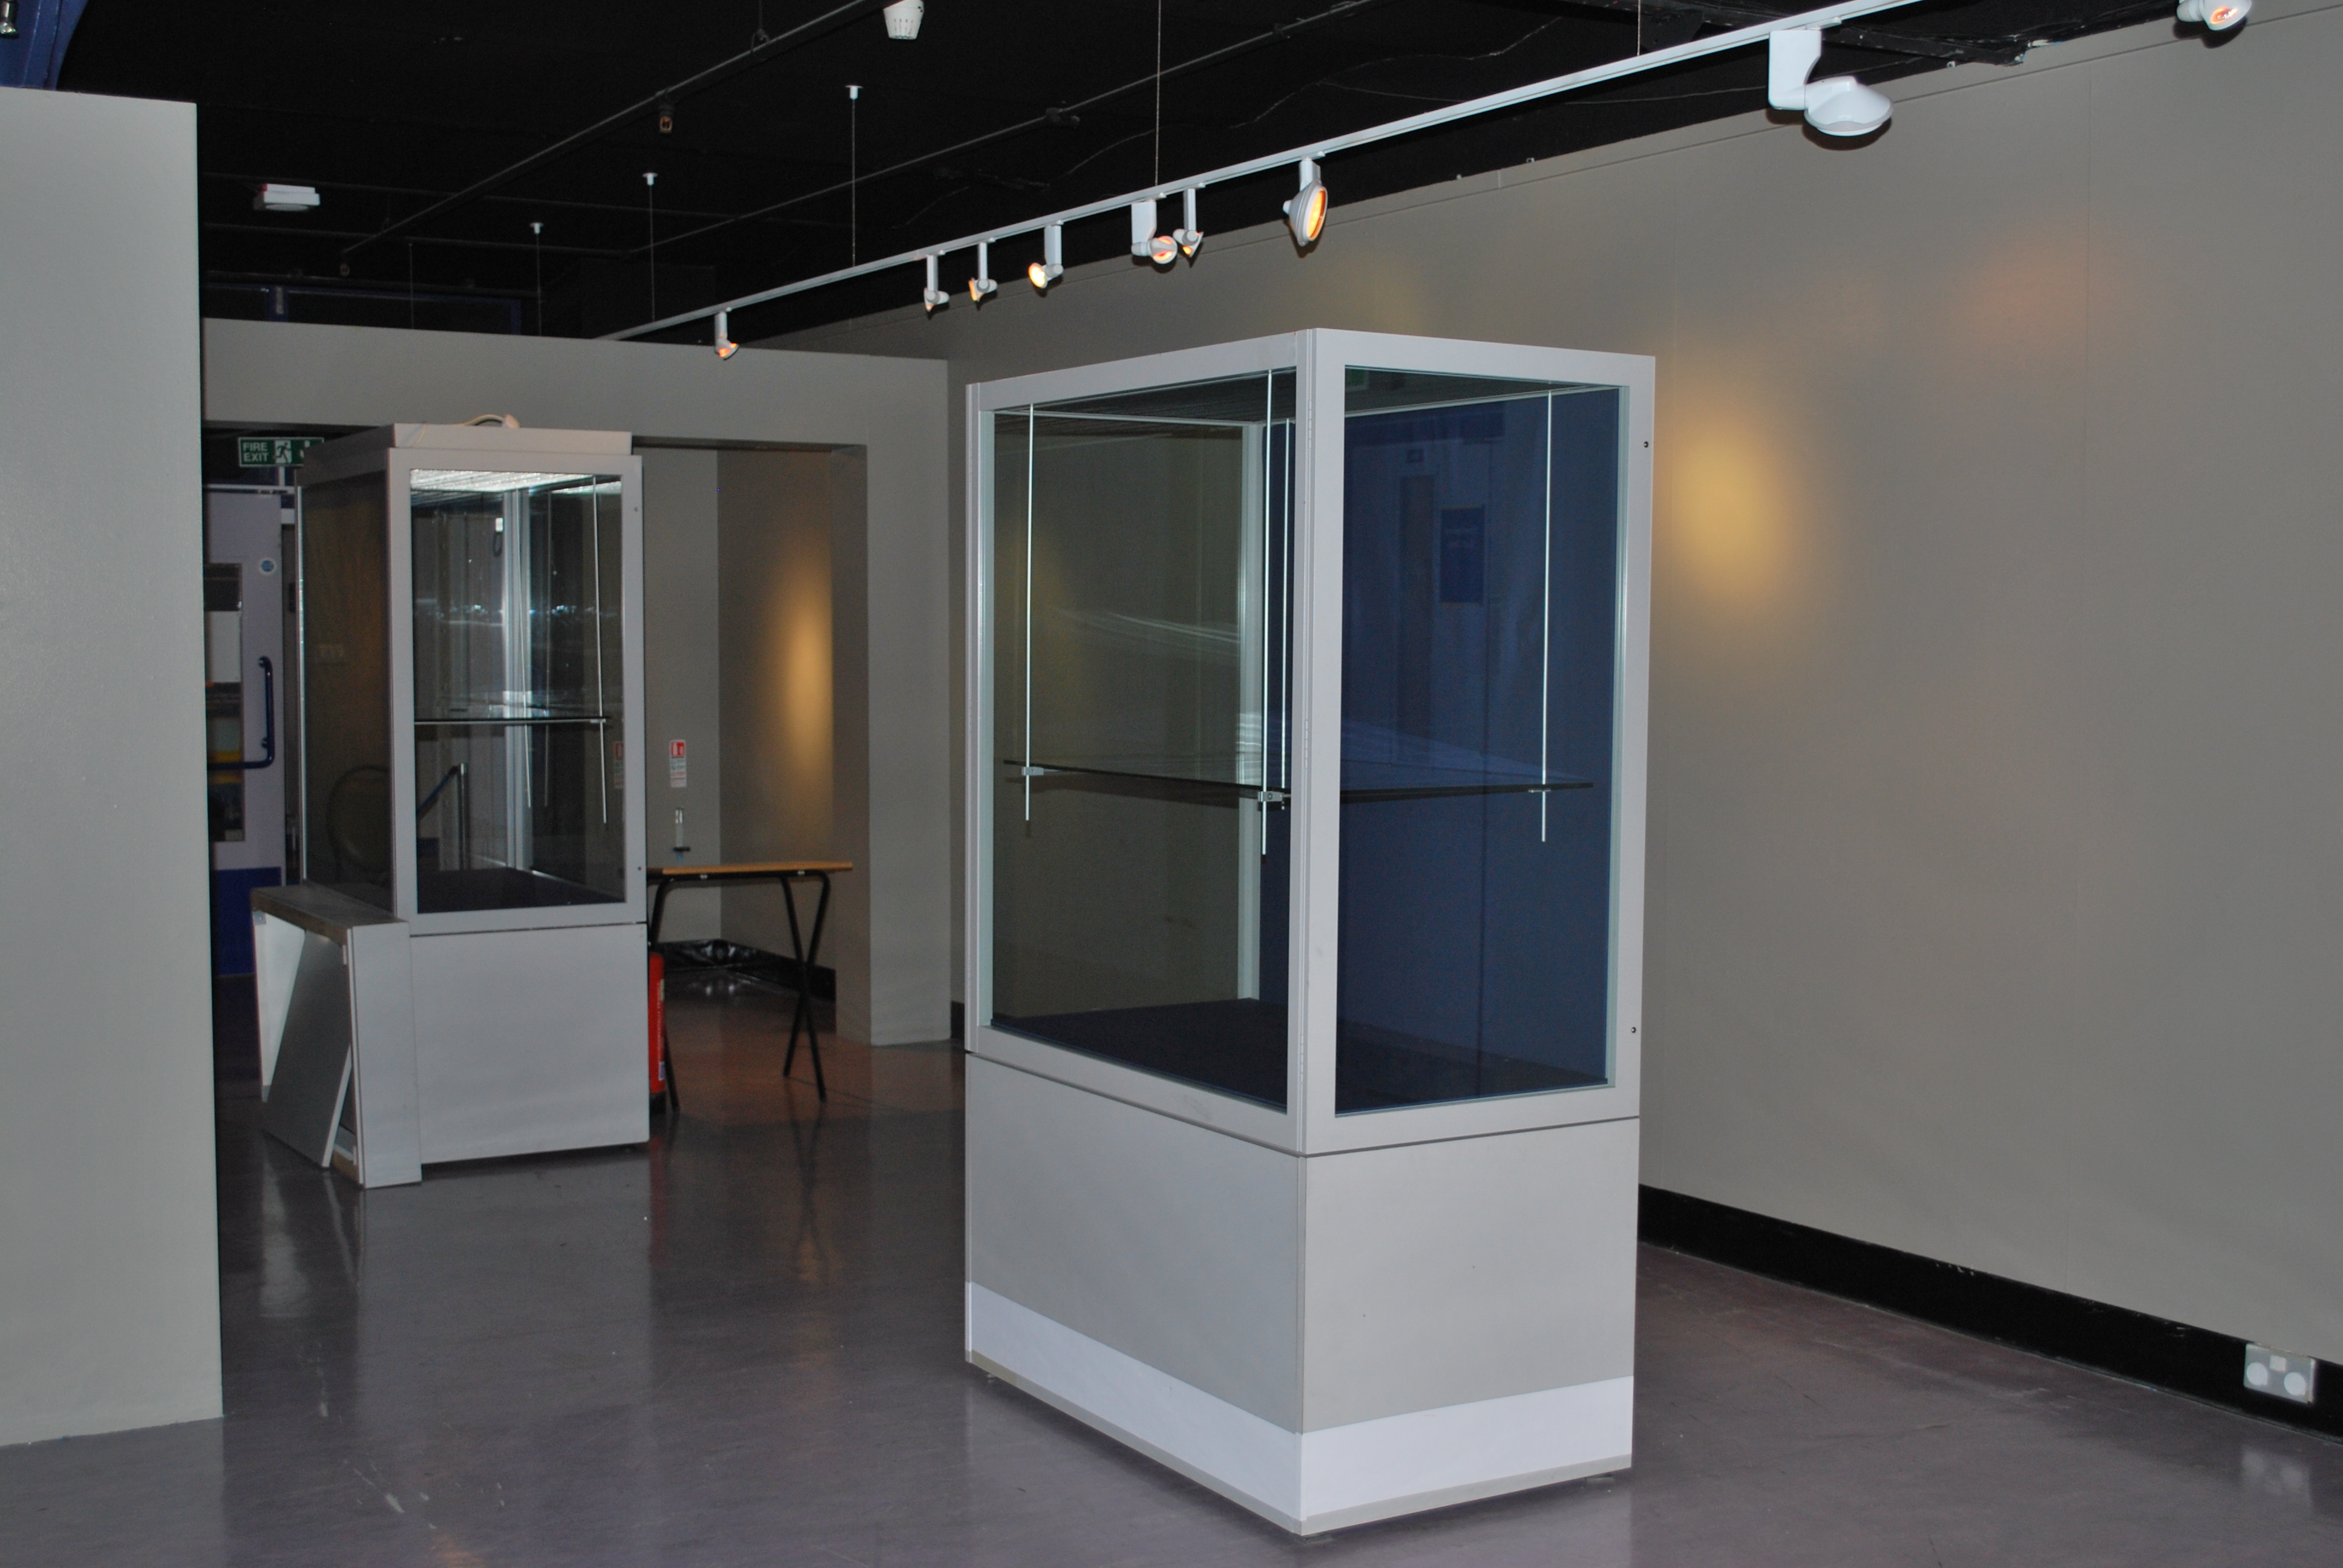 Temporary Exhibition gallery